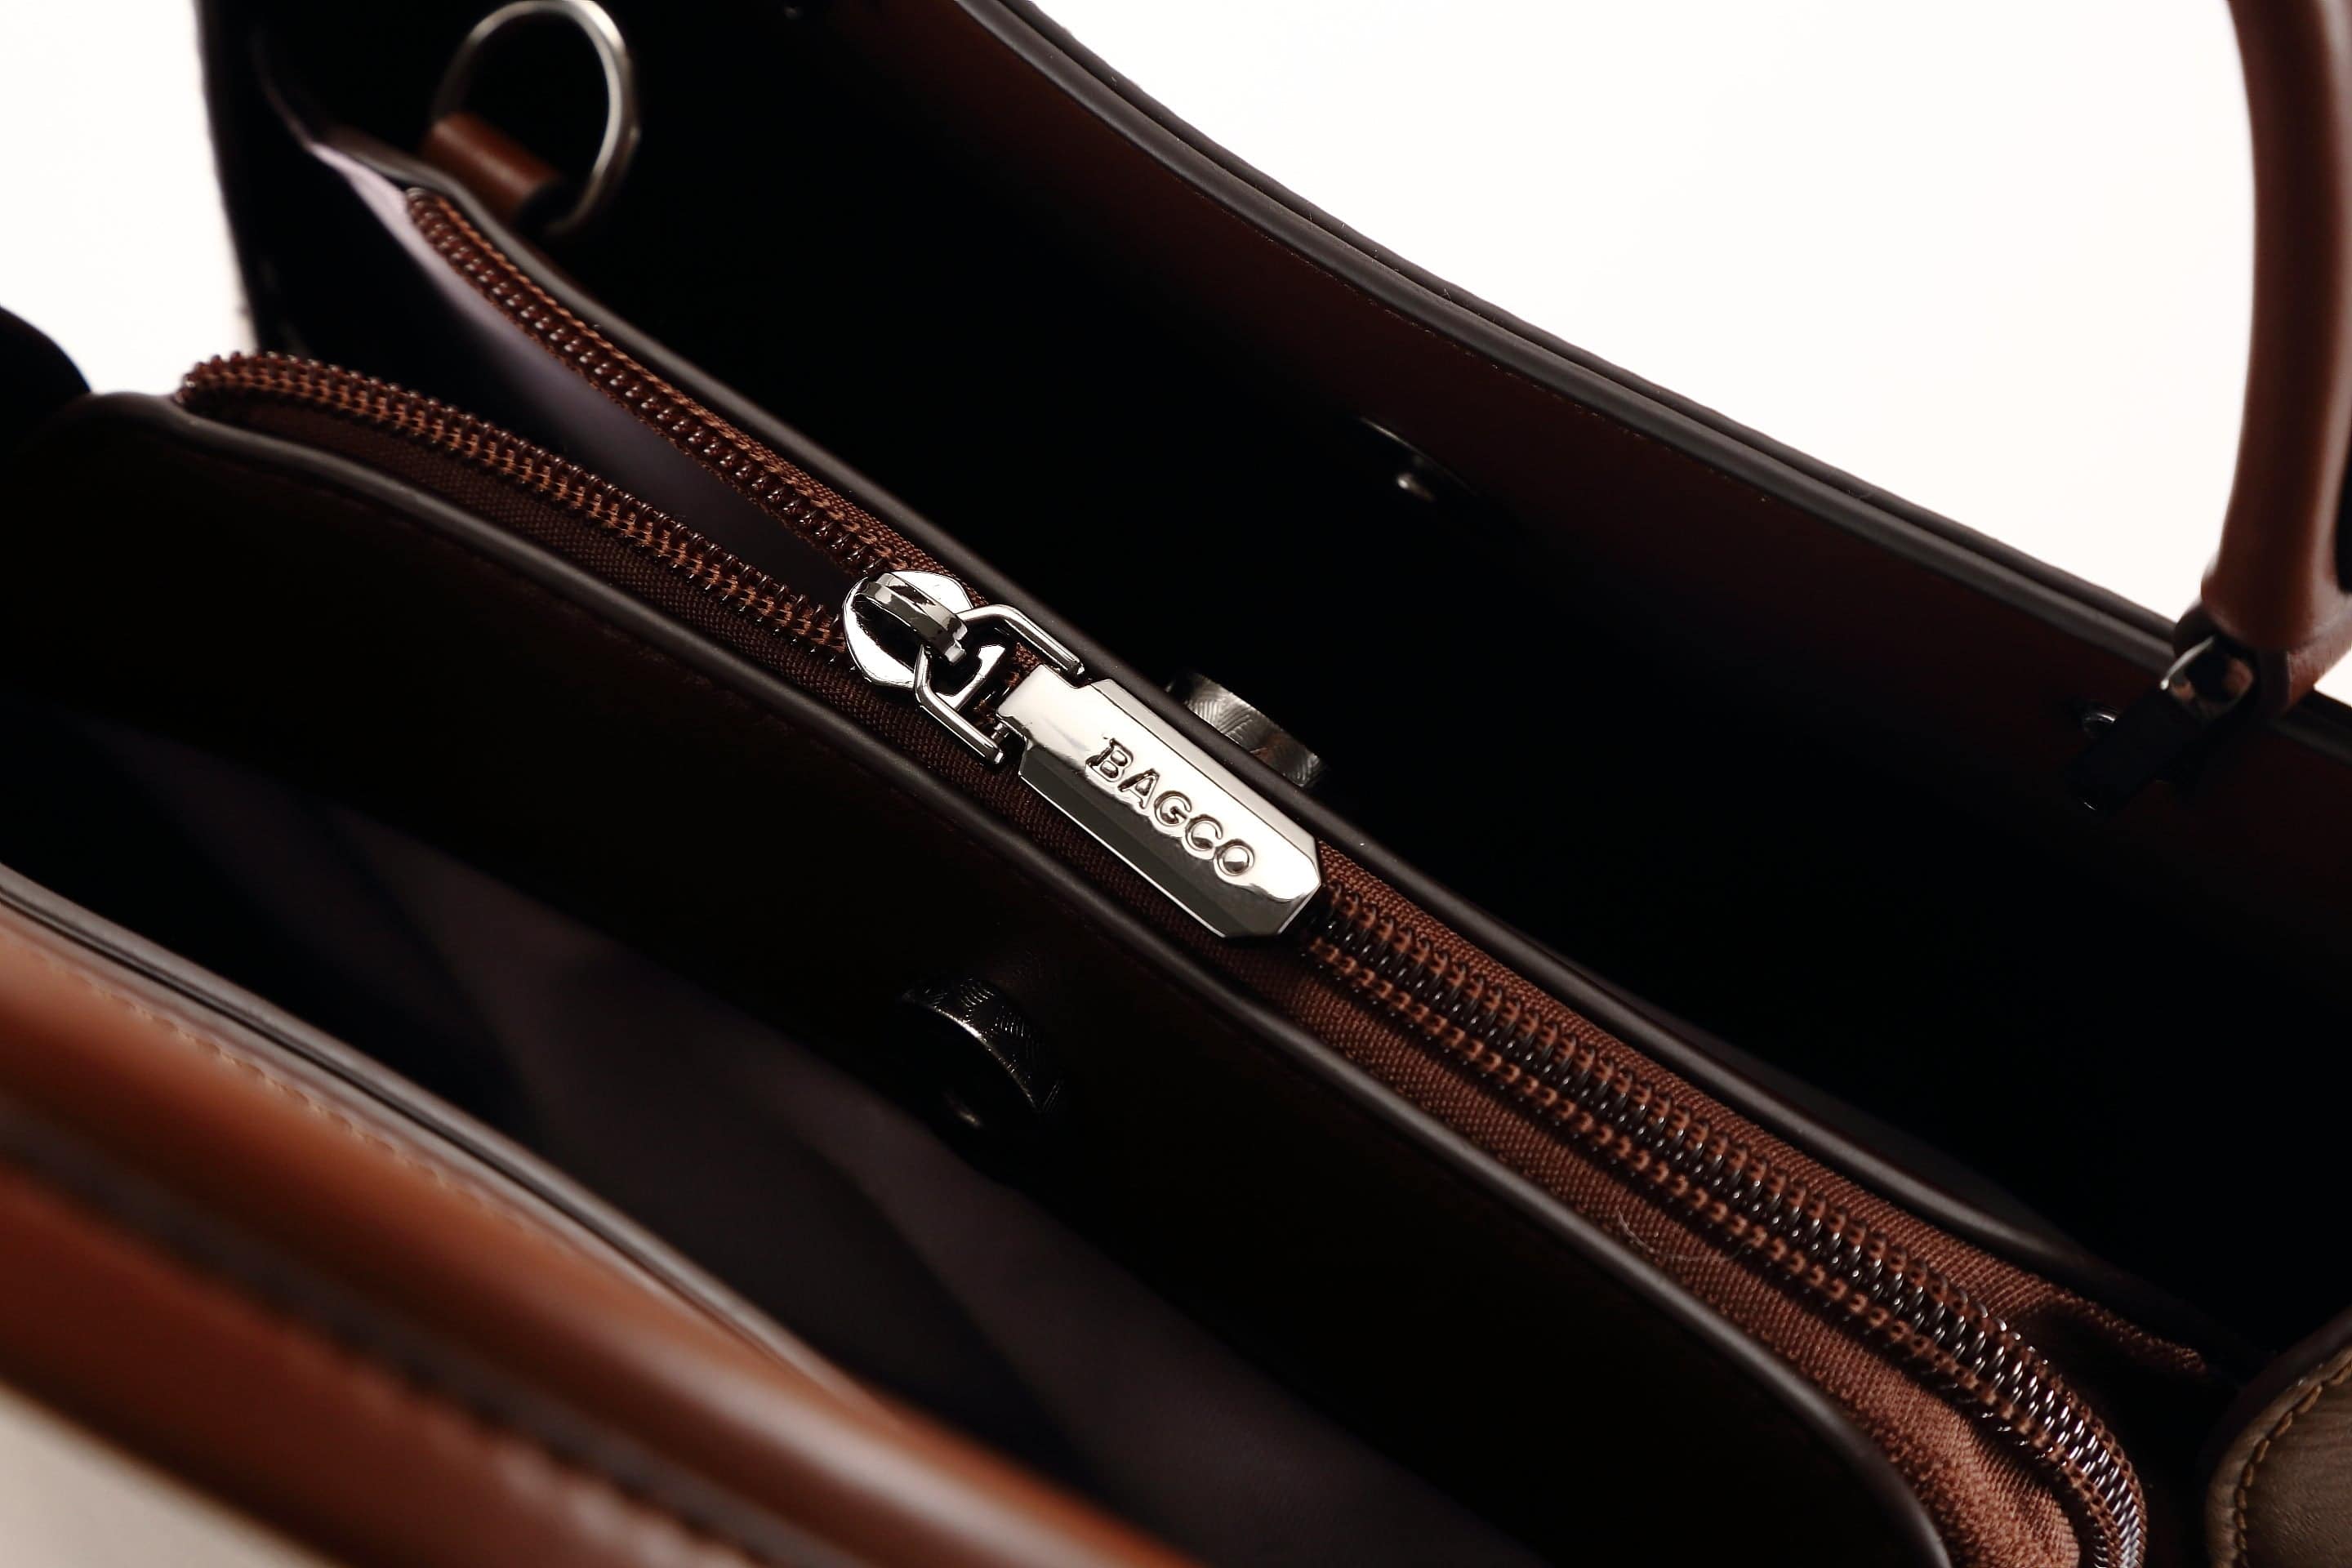 حقيبة يد نسائية باللون الاحمر مربعة الشكل كبيرة الحجم بيد وحزام طويل لحملها على الكتف - KSA